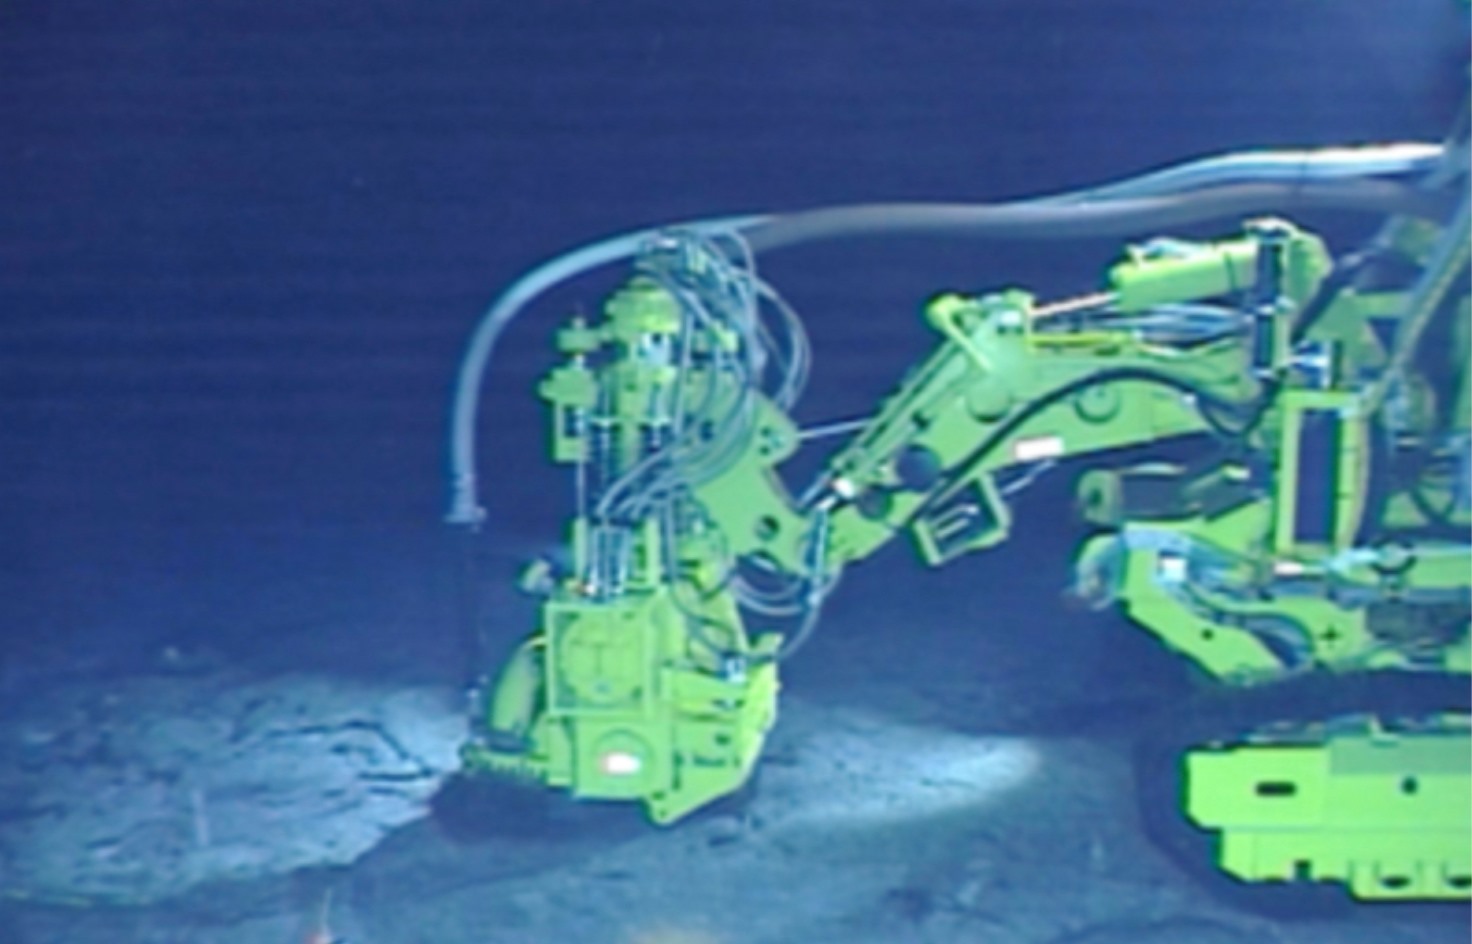 Máy đào thử nghiệm dưới đáy biển. Ảnh: JOGMEC